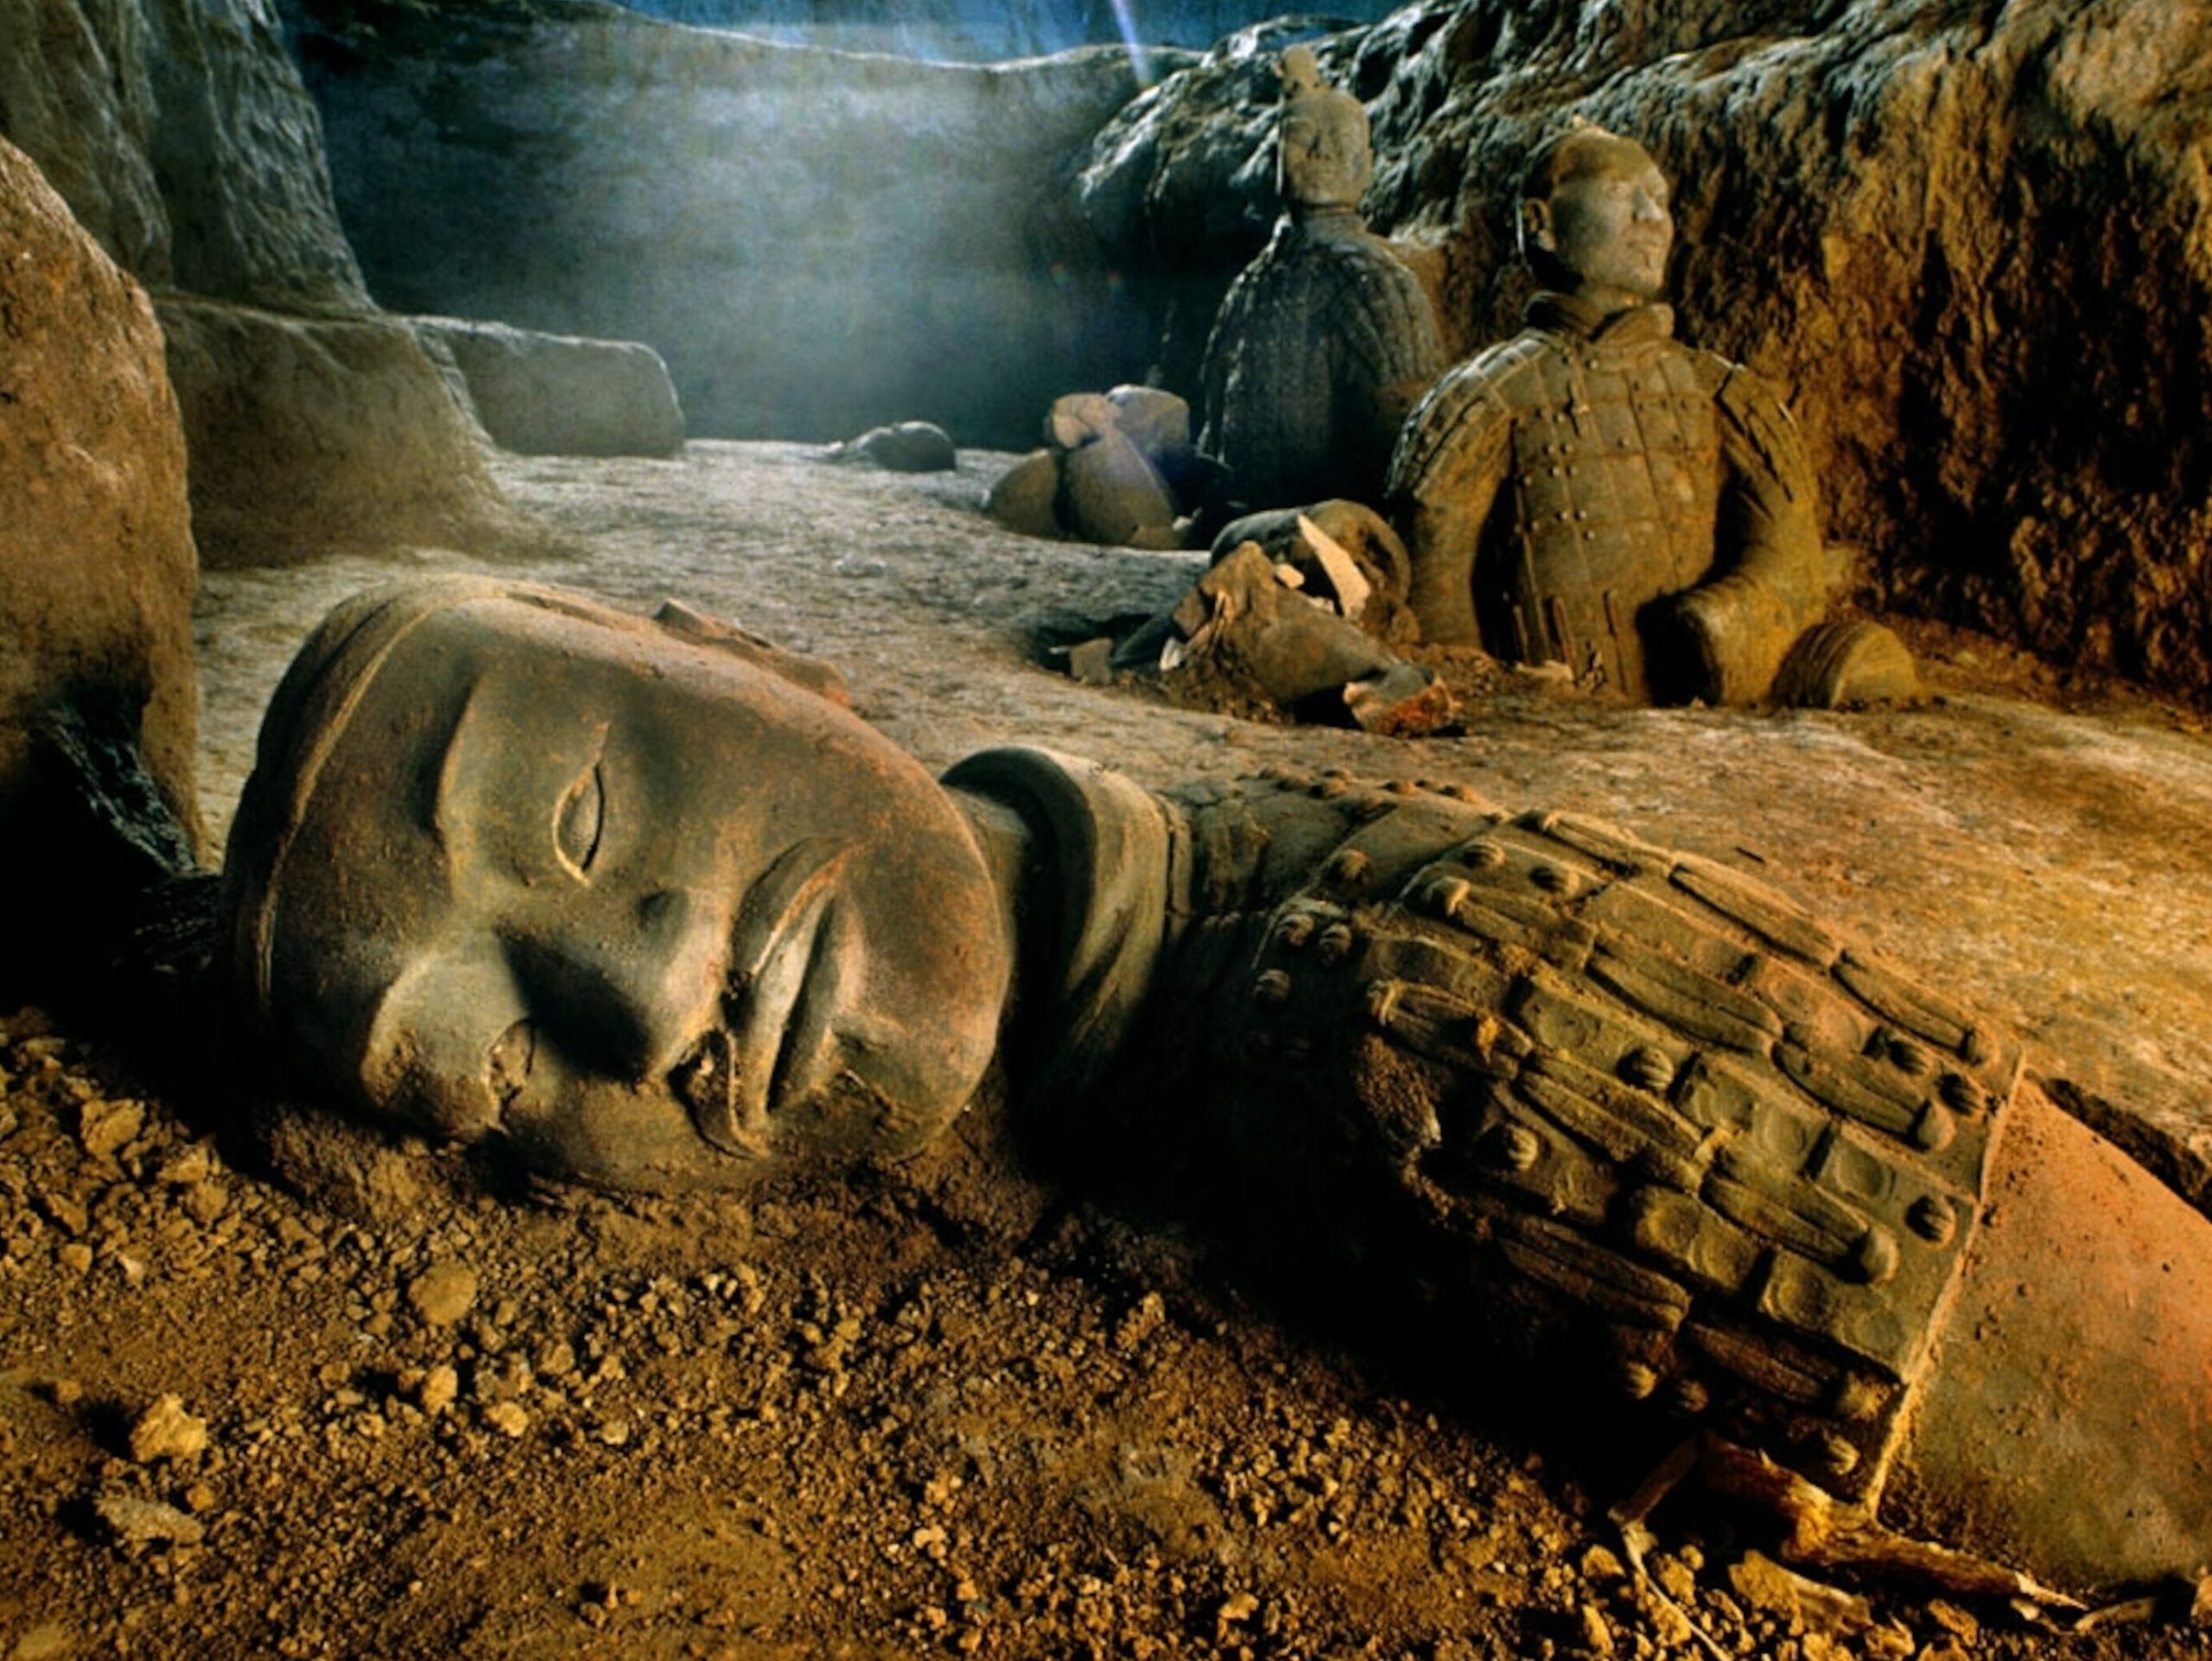 Historia de los guerreros de terracota de China en la tumba del emperador Qin